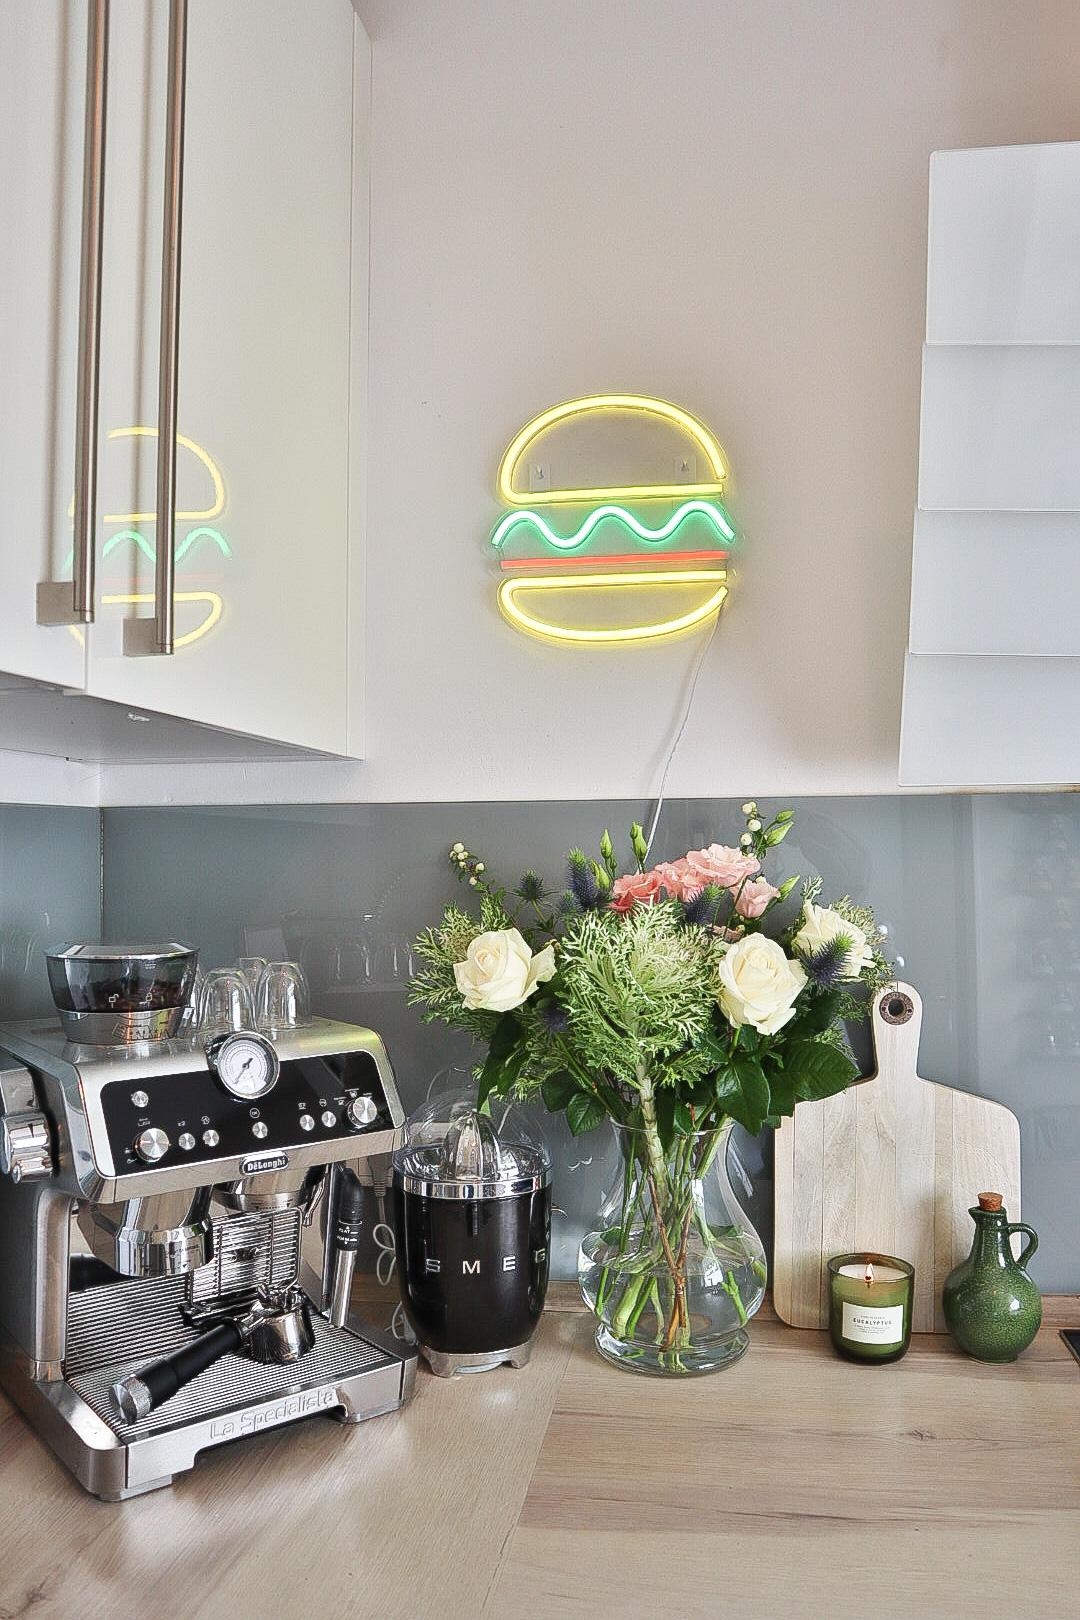 Neben meiner Siebträgermaschine, liebe ich vor allem meinen neuen LED-Hamburger in der #küche 🍔 ☕️ 
#livingchallenge